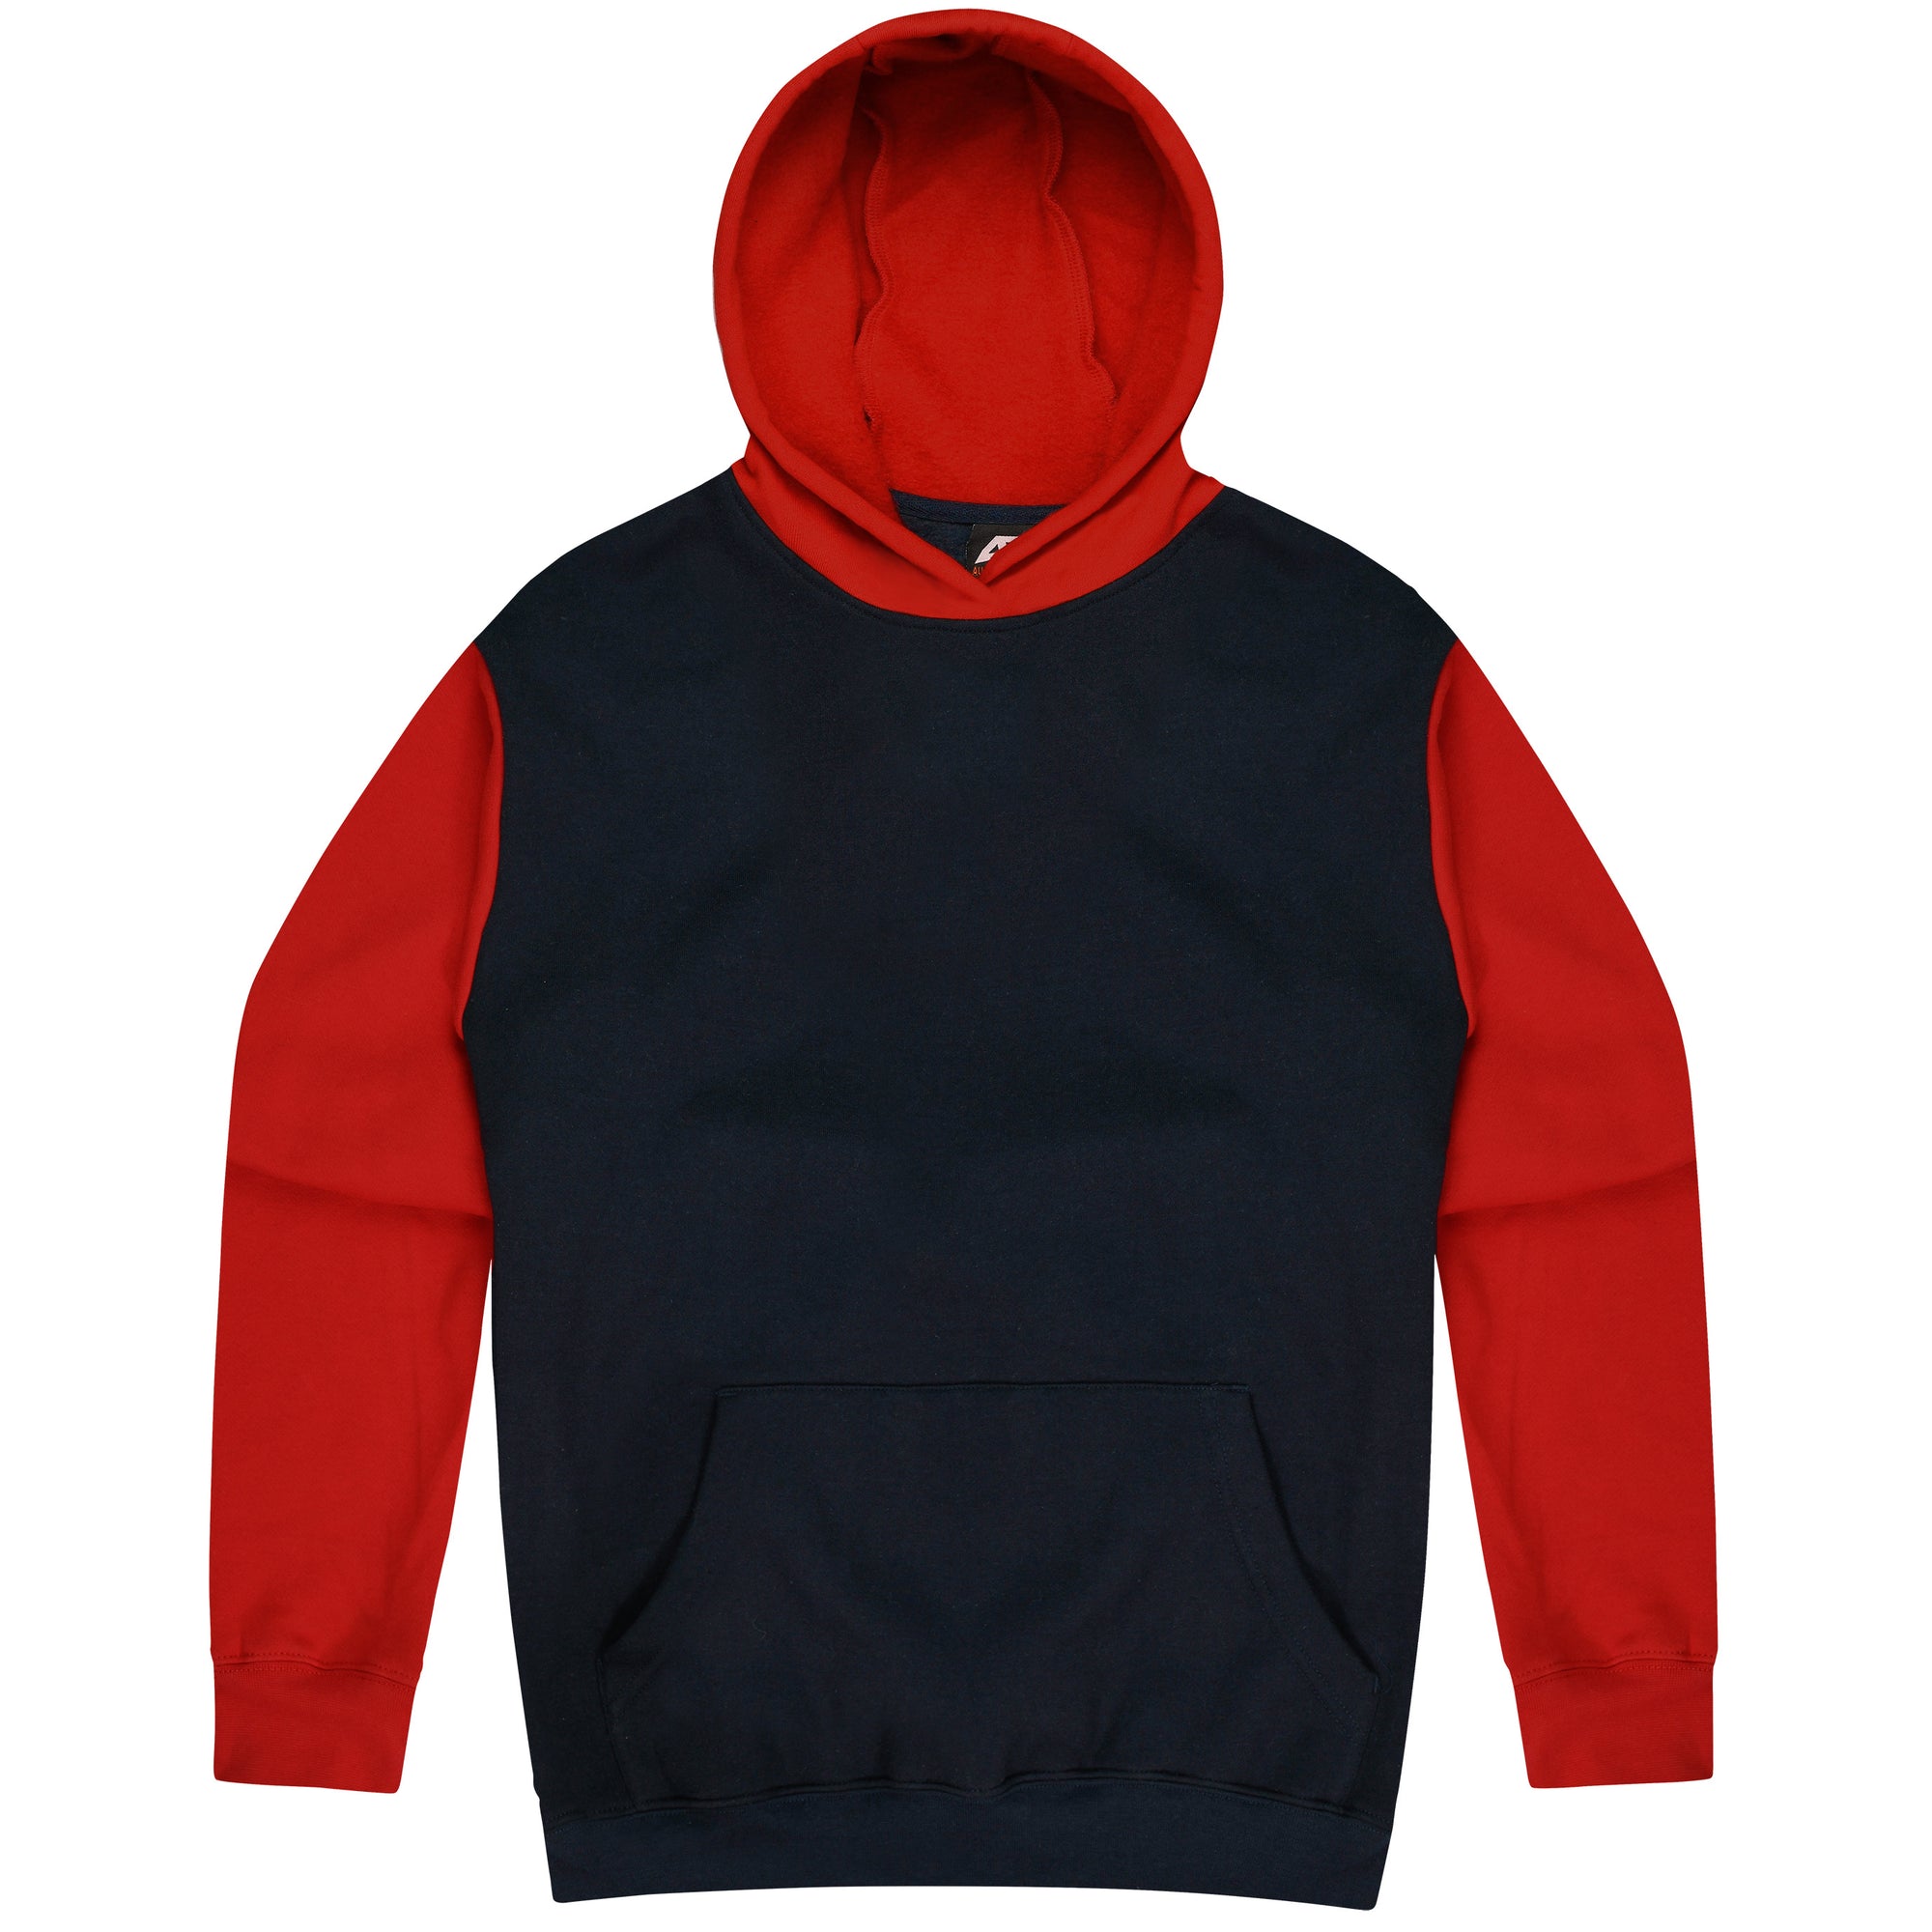 Custom Printed Monash Hoodies - Navy/Red